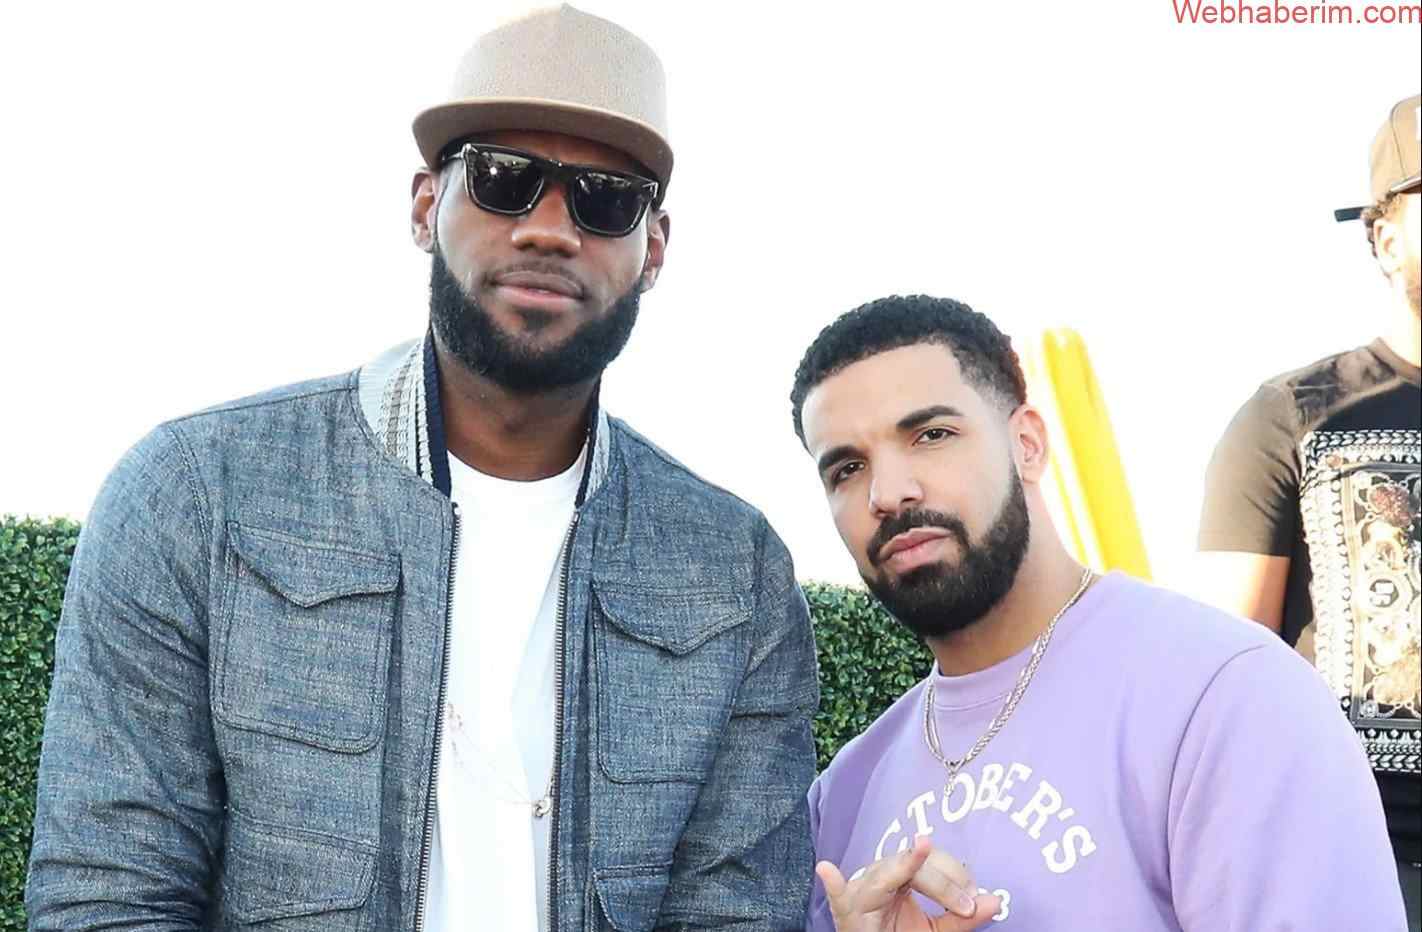 Ünlü Rapçi Drake, LeBron James Aile Vakfı’na 1 Milyon Dolarlık Bitcoin (BTC) Bağışladı